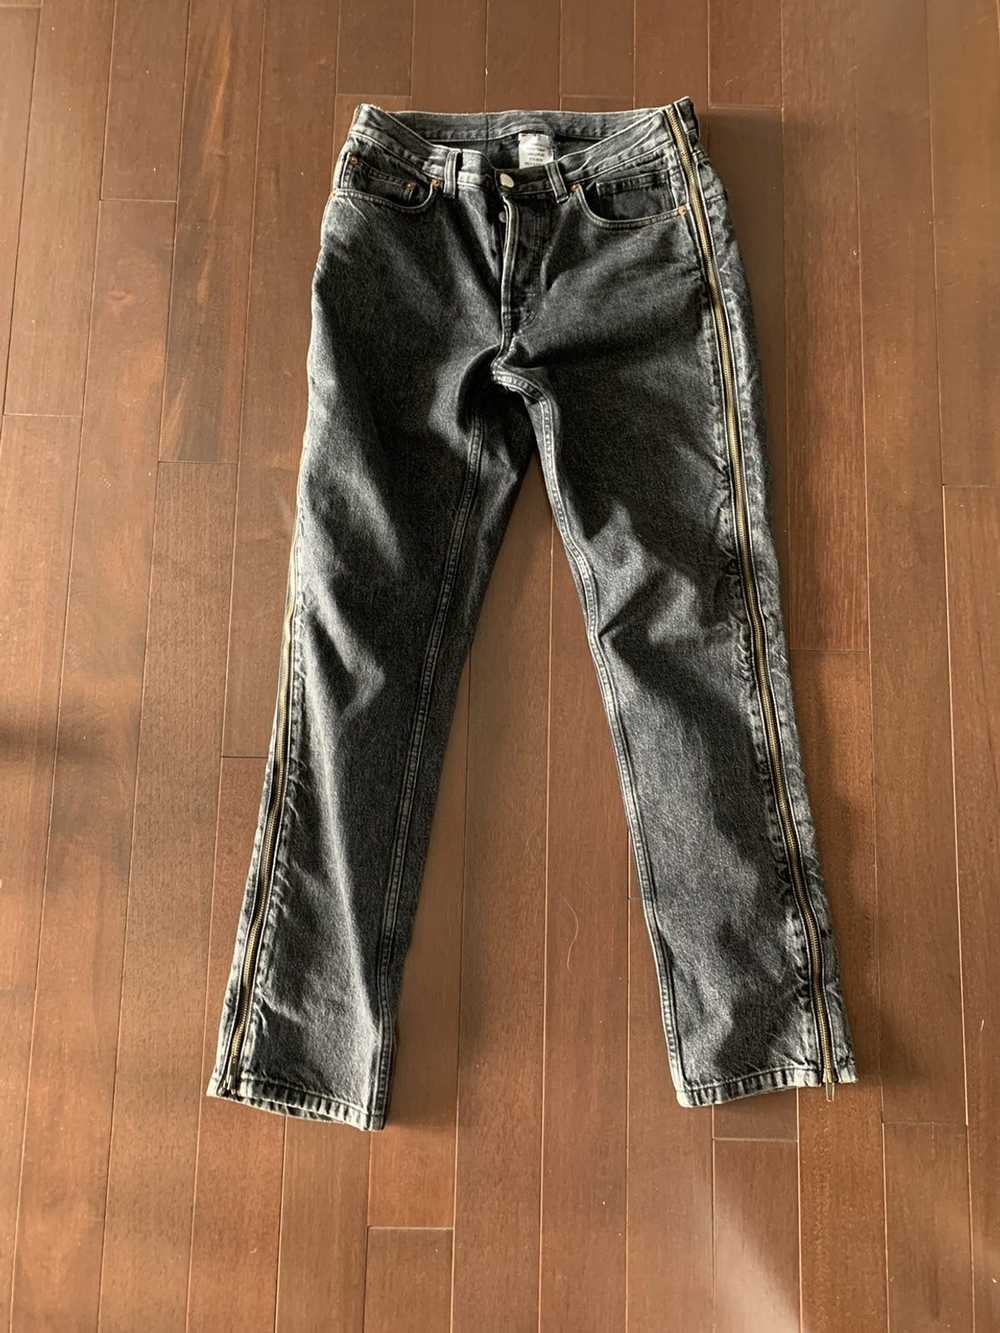 Vetements Vetements zipper jeans - image 1